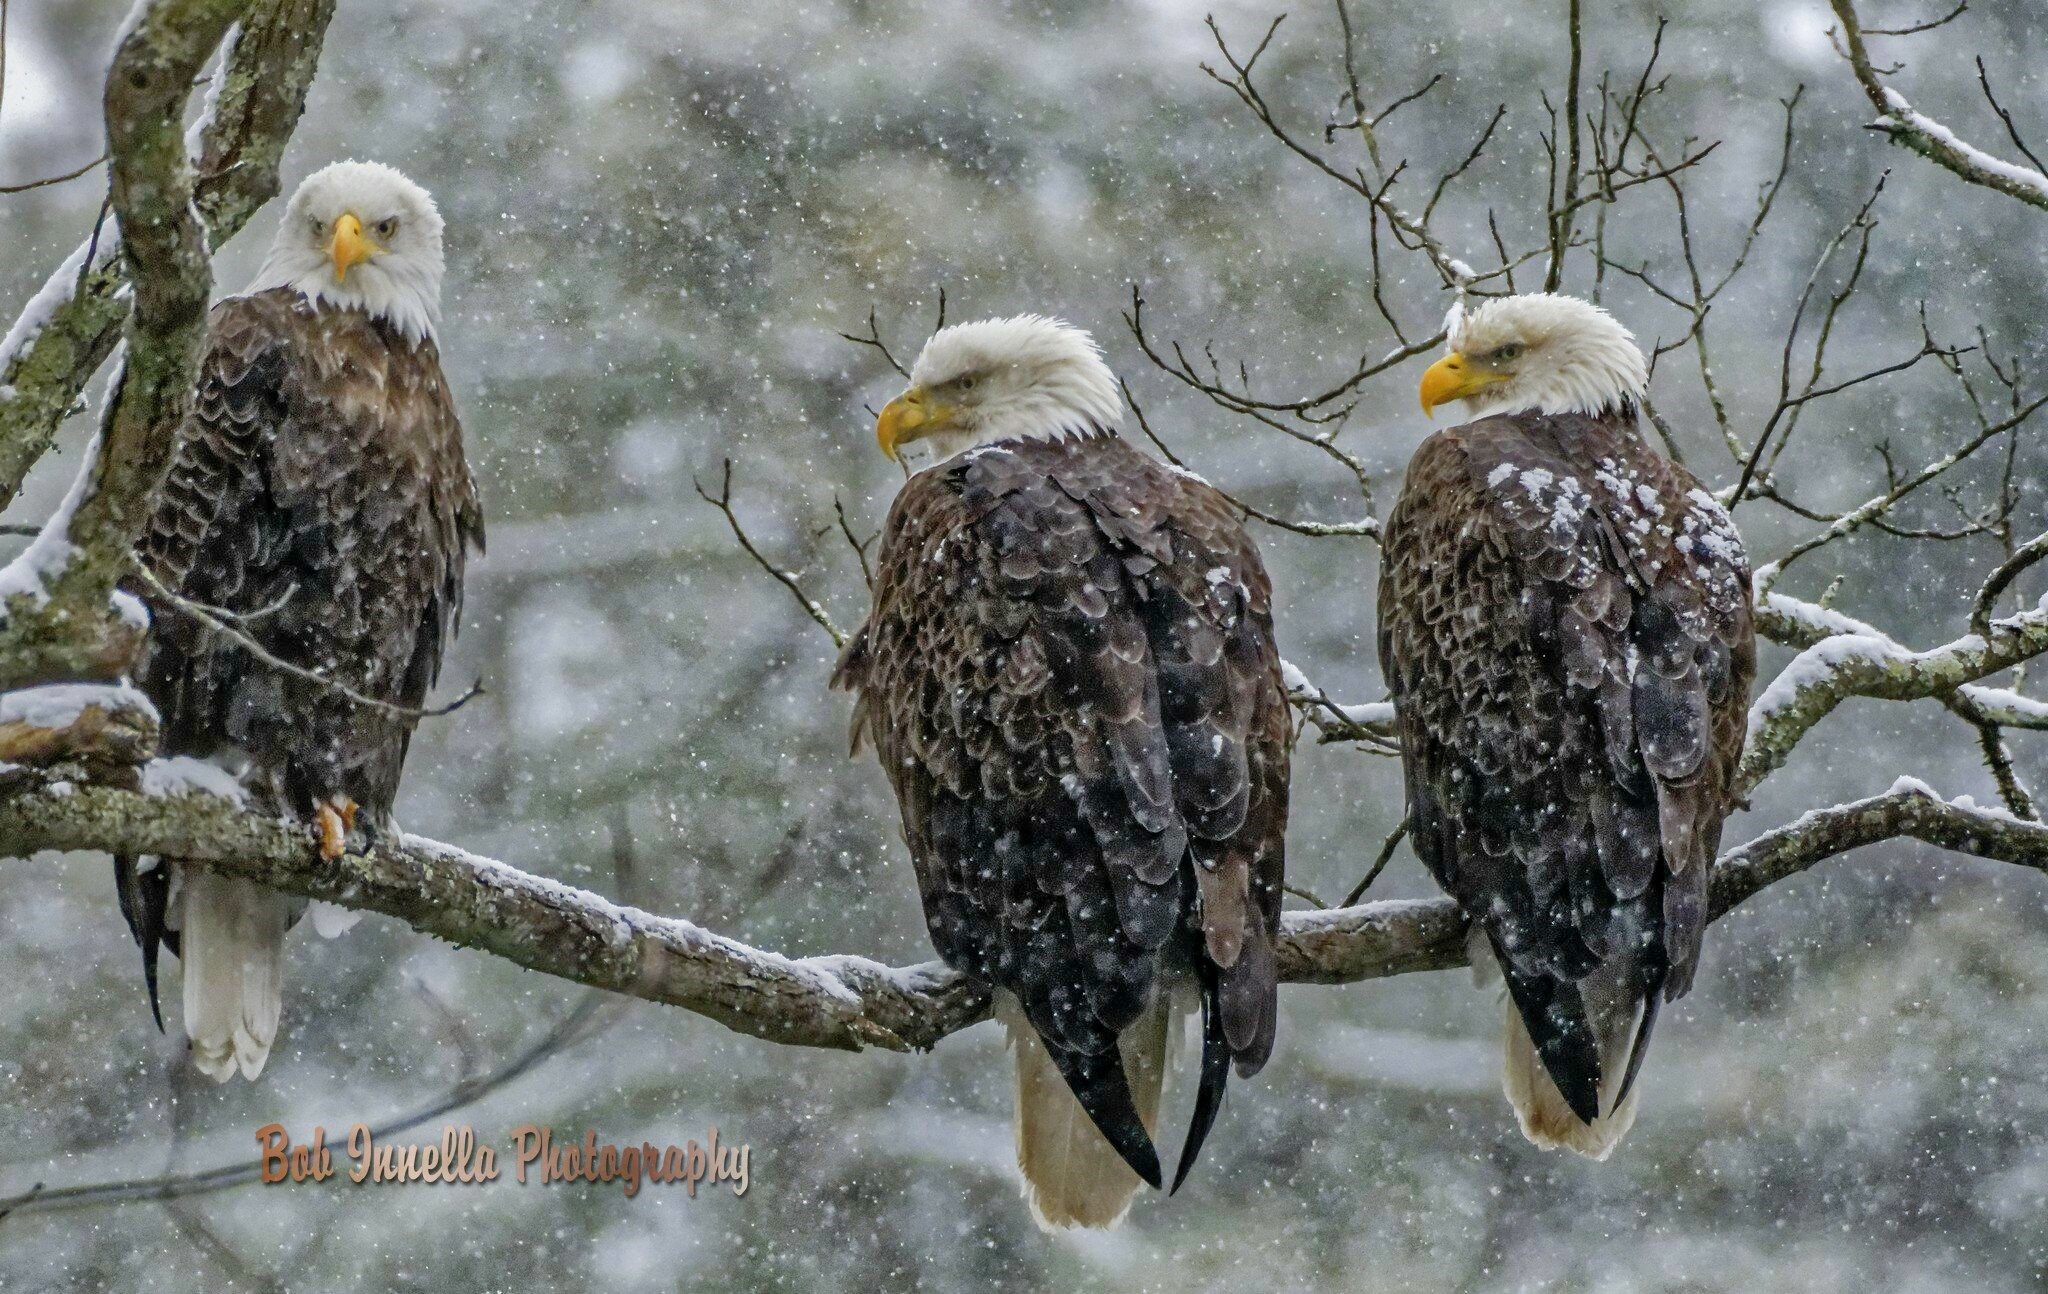 3 Eagles In Heavy Snowstorm 3 Bald Eagles in Heavy Snowstorm, Rio, Ny by Buckmaster